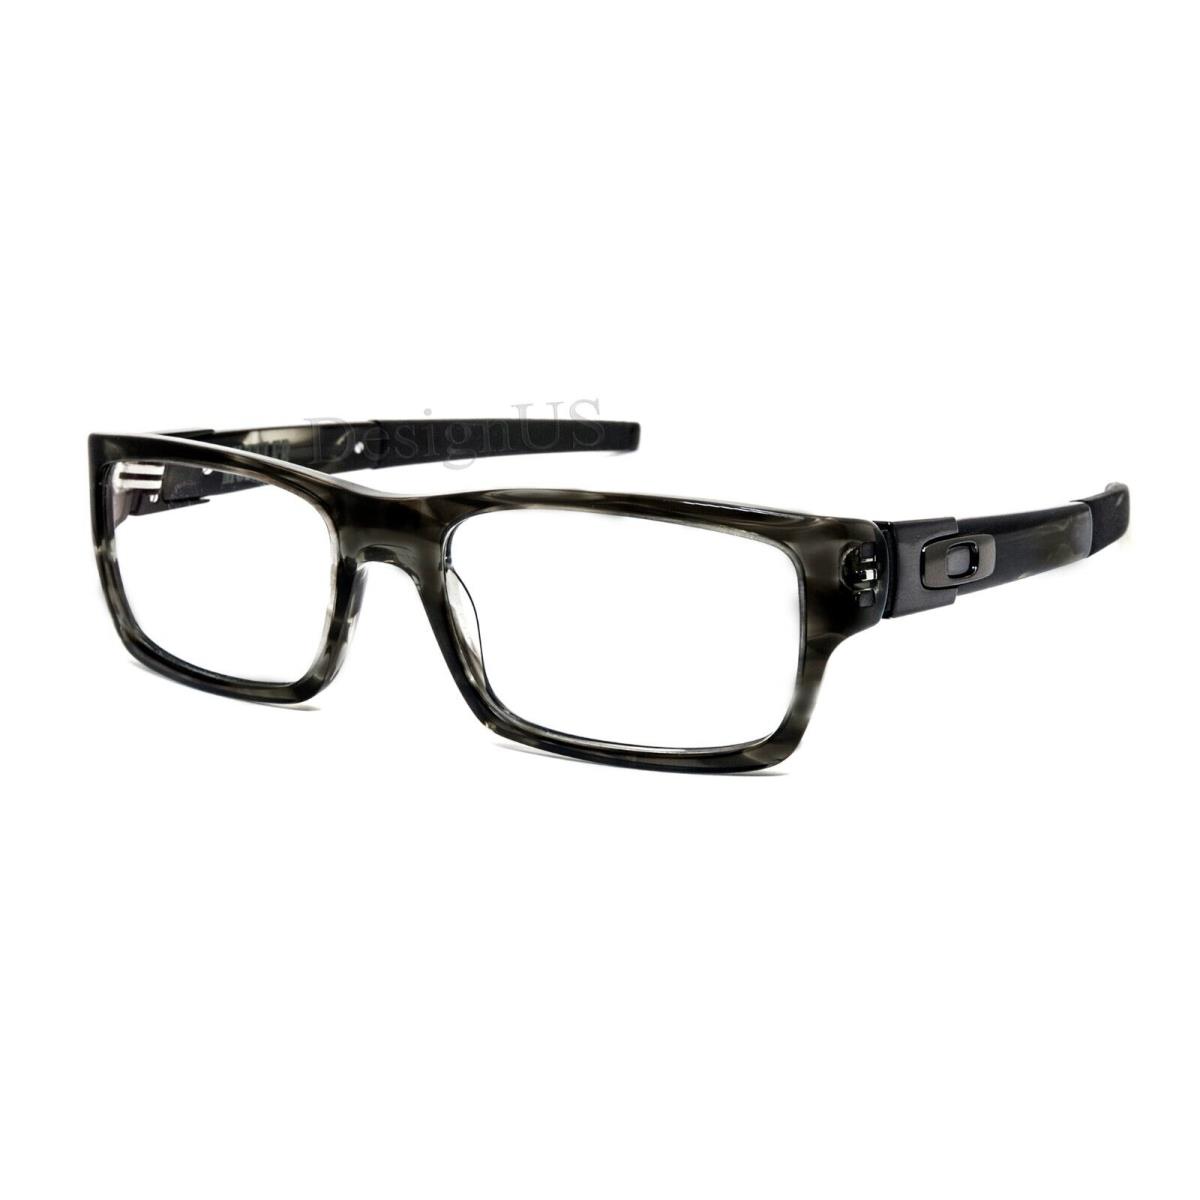 Oakley Muffler 22-204 Grey Tortoise 53/18/135 Eyeglasses - Frame: Grey Tortoise, Lens: